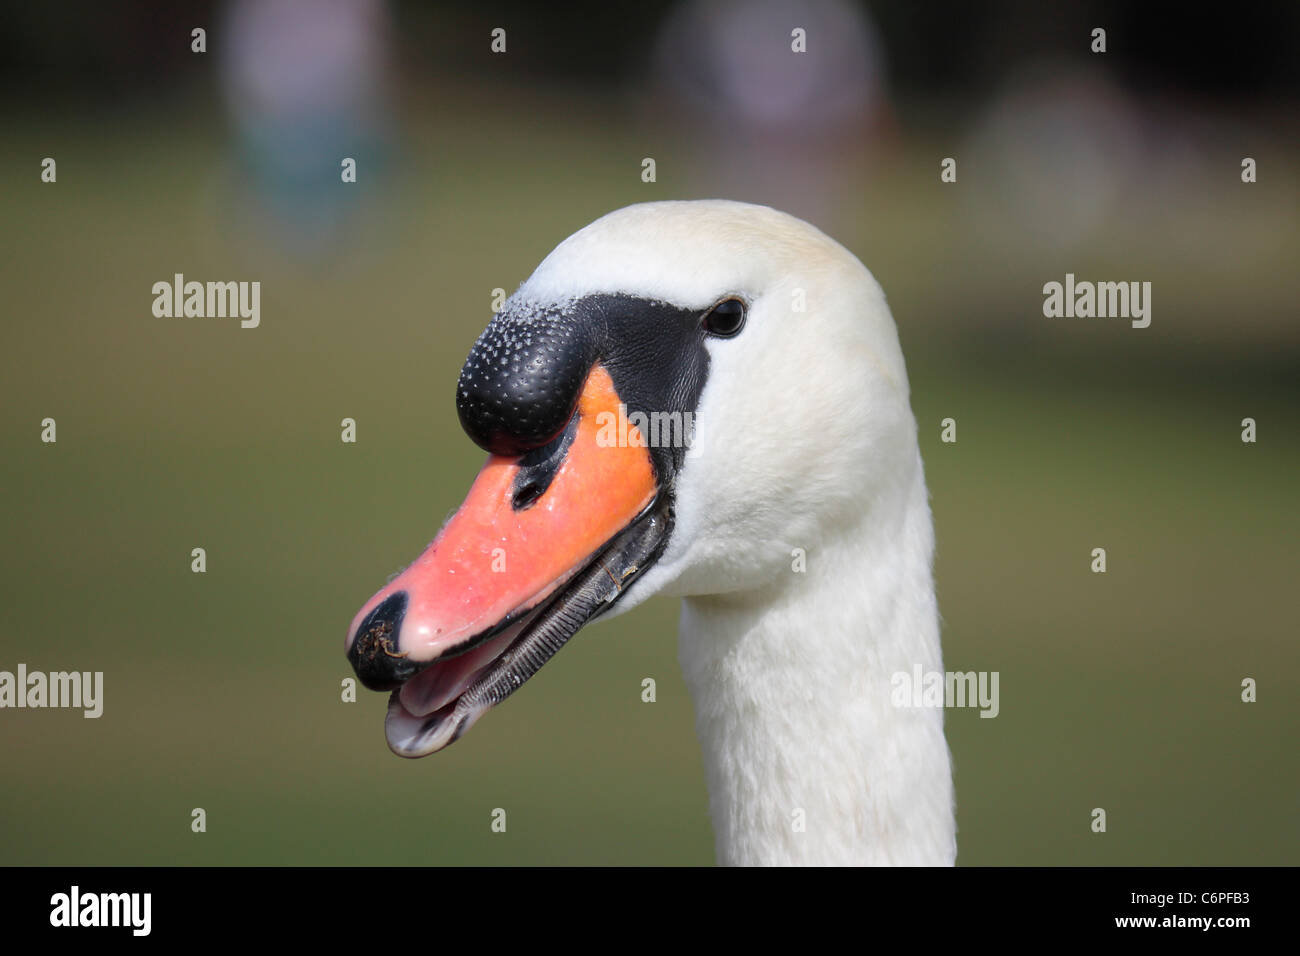 Cierre de un varón blanco cisne la cabeza con el pico ligeramente abierto revelando su lengua y los bordes dentados a lo largo de su pico. Foto de stock